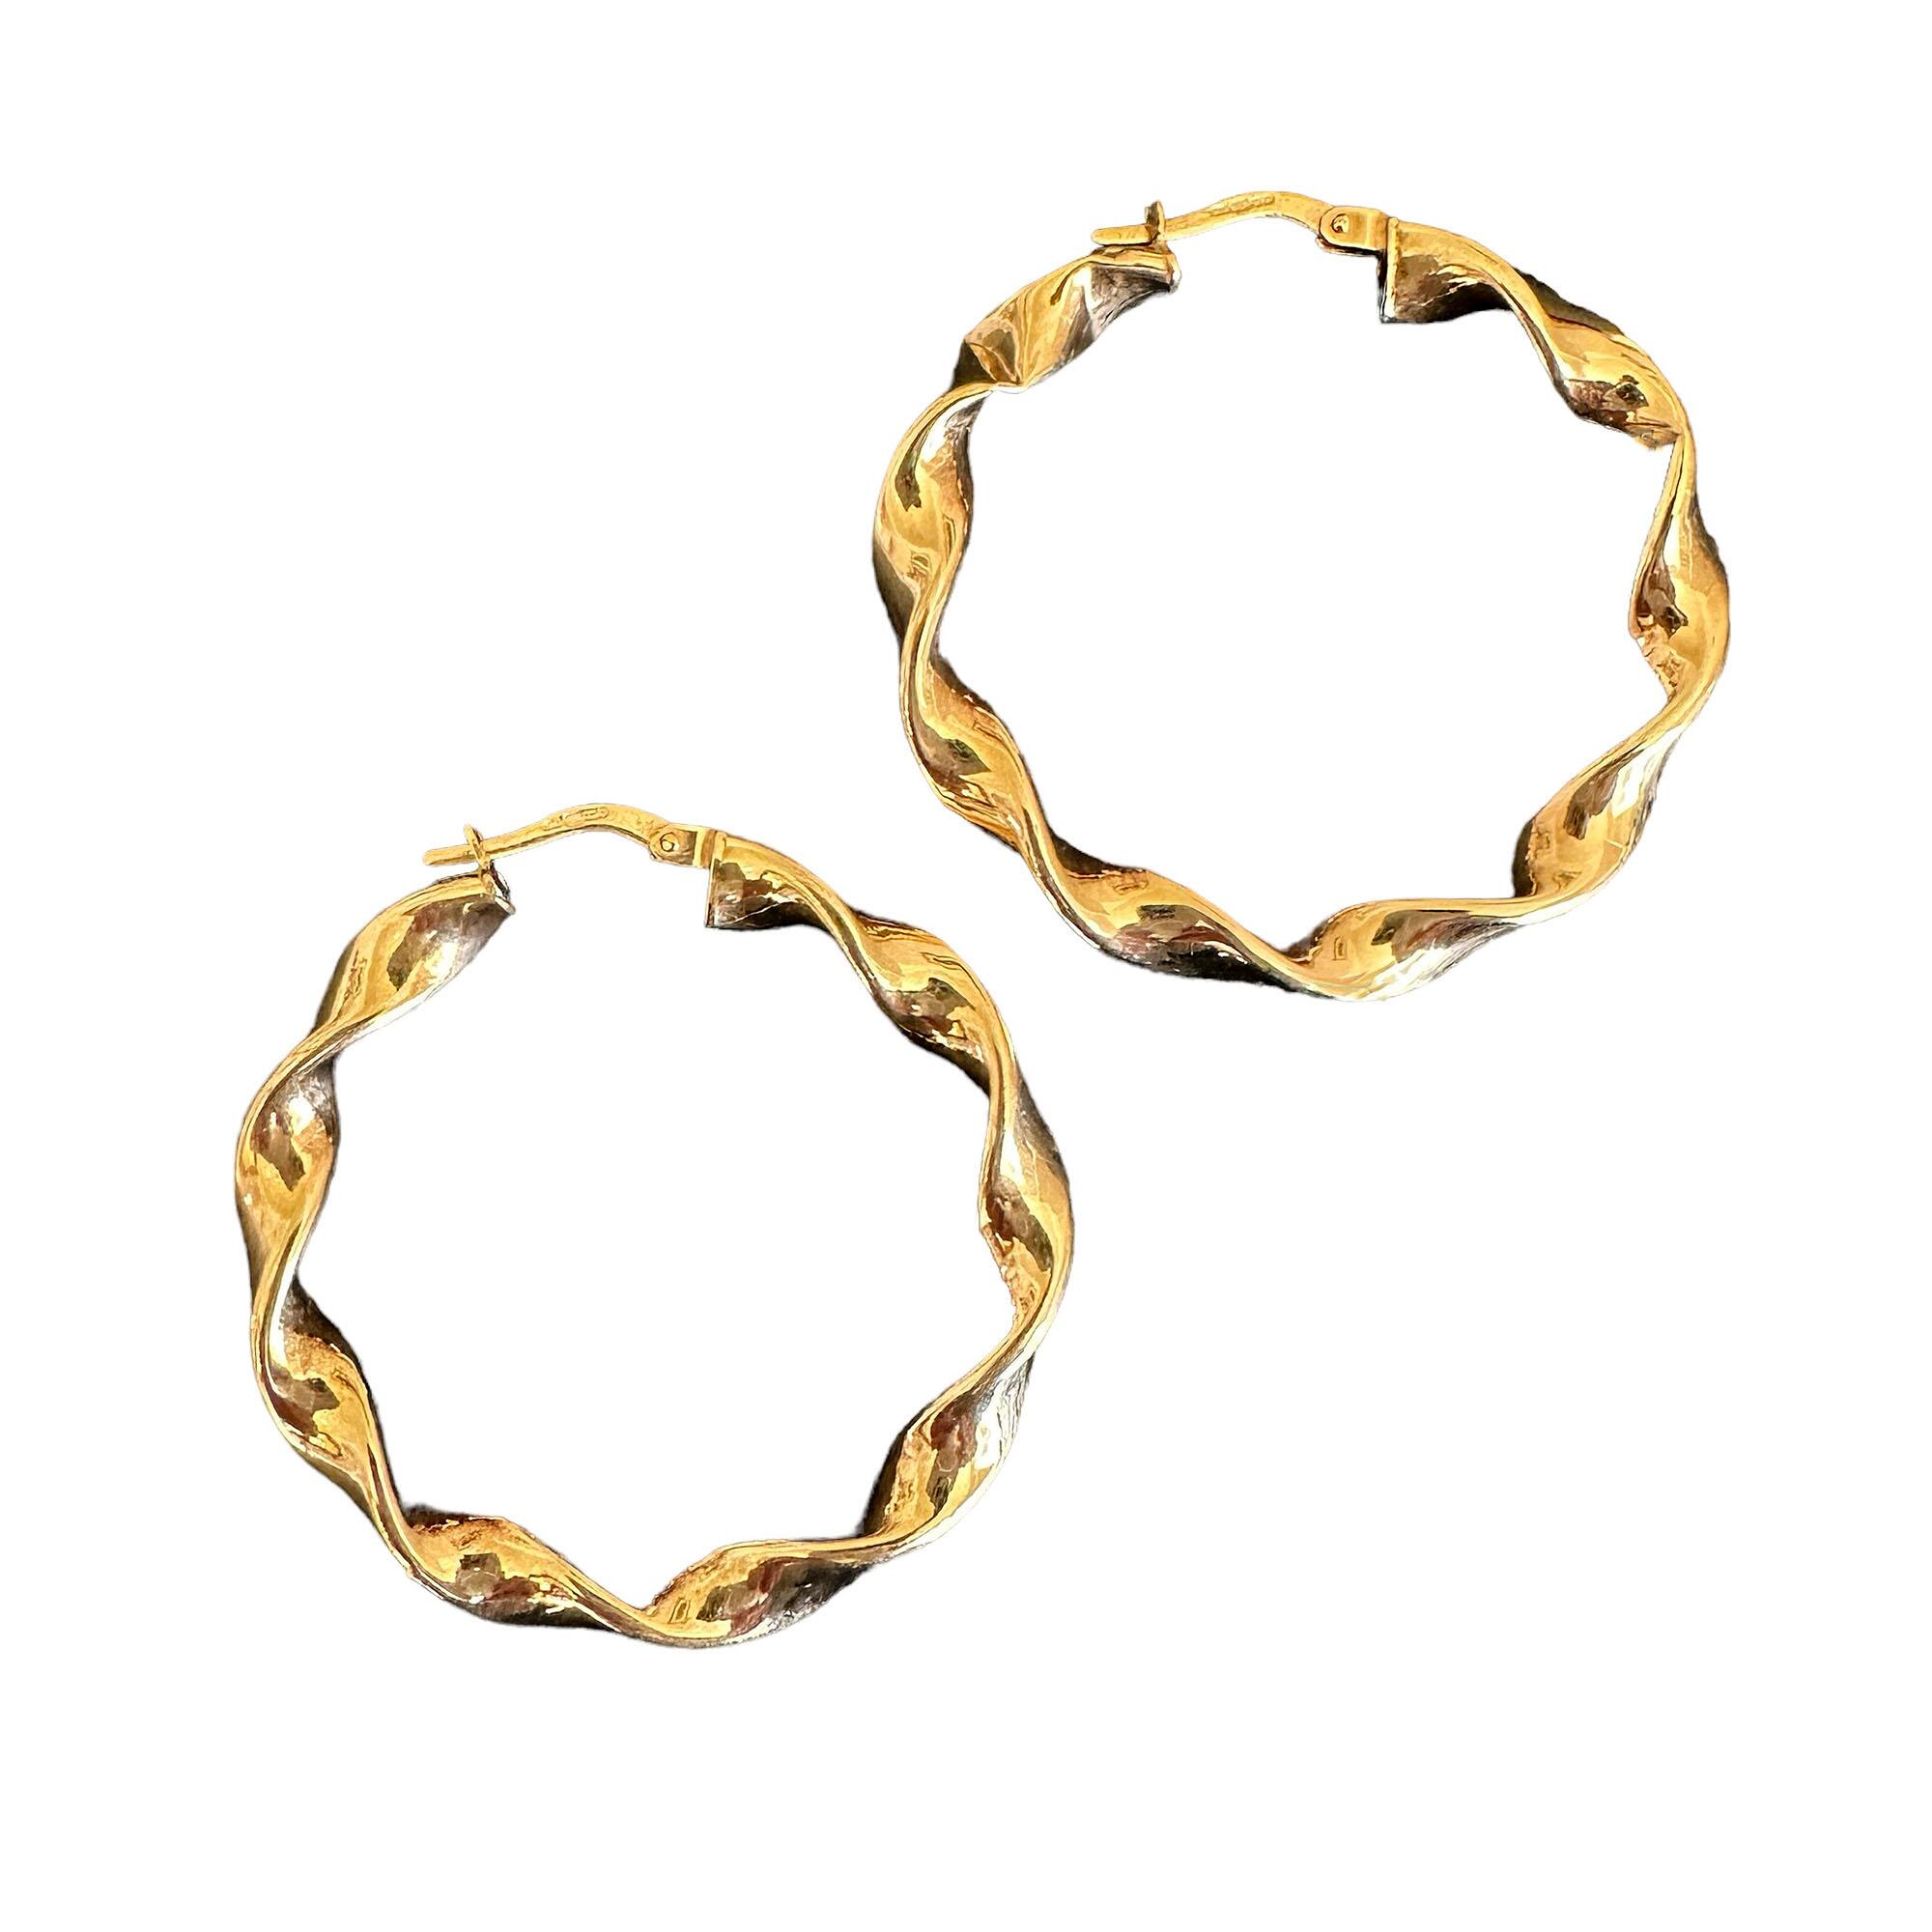 Large 9ct Gold, Twist Rope Hoop Earrings, 38mm Diameter